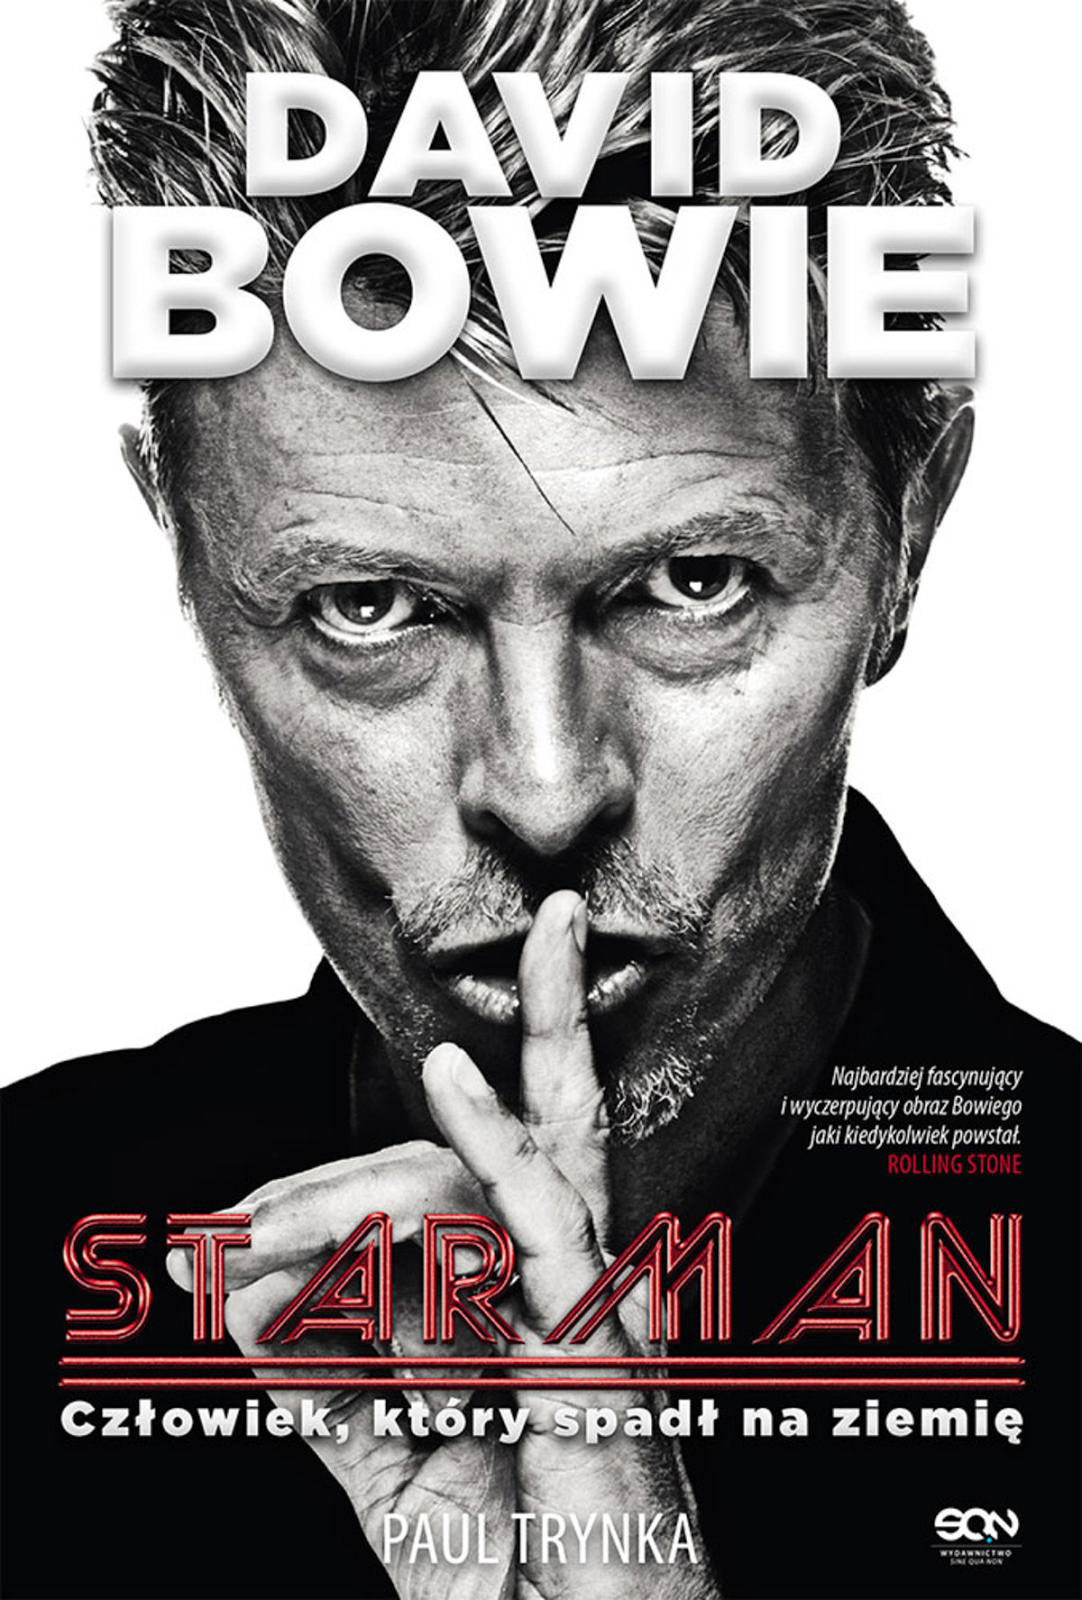 David Bowie. Starman. Człowiek, który spadł na ziemię (Starman), Paul Trynka, Wydawnictwo SQN, 2013